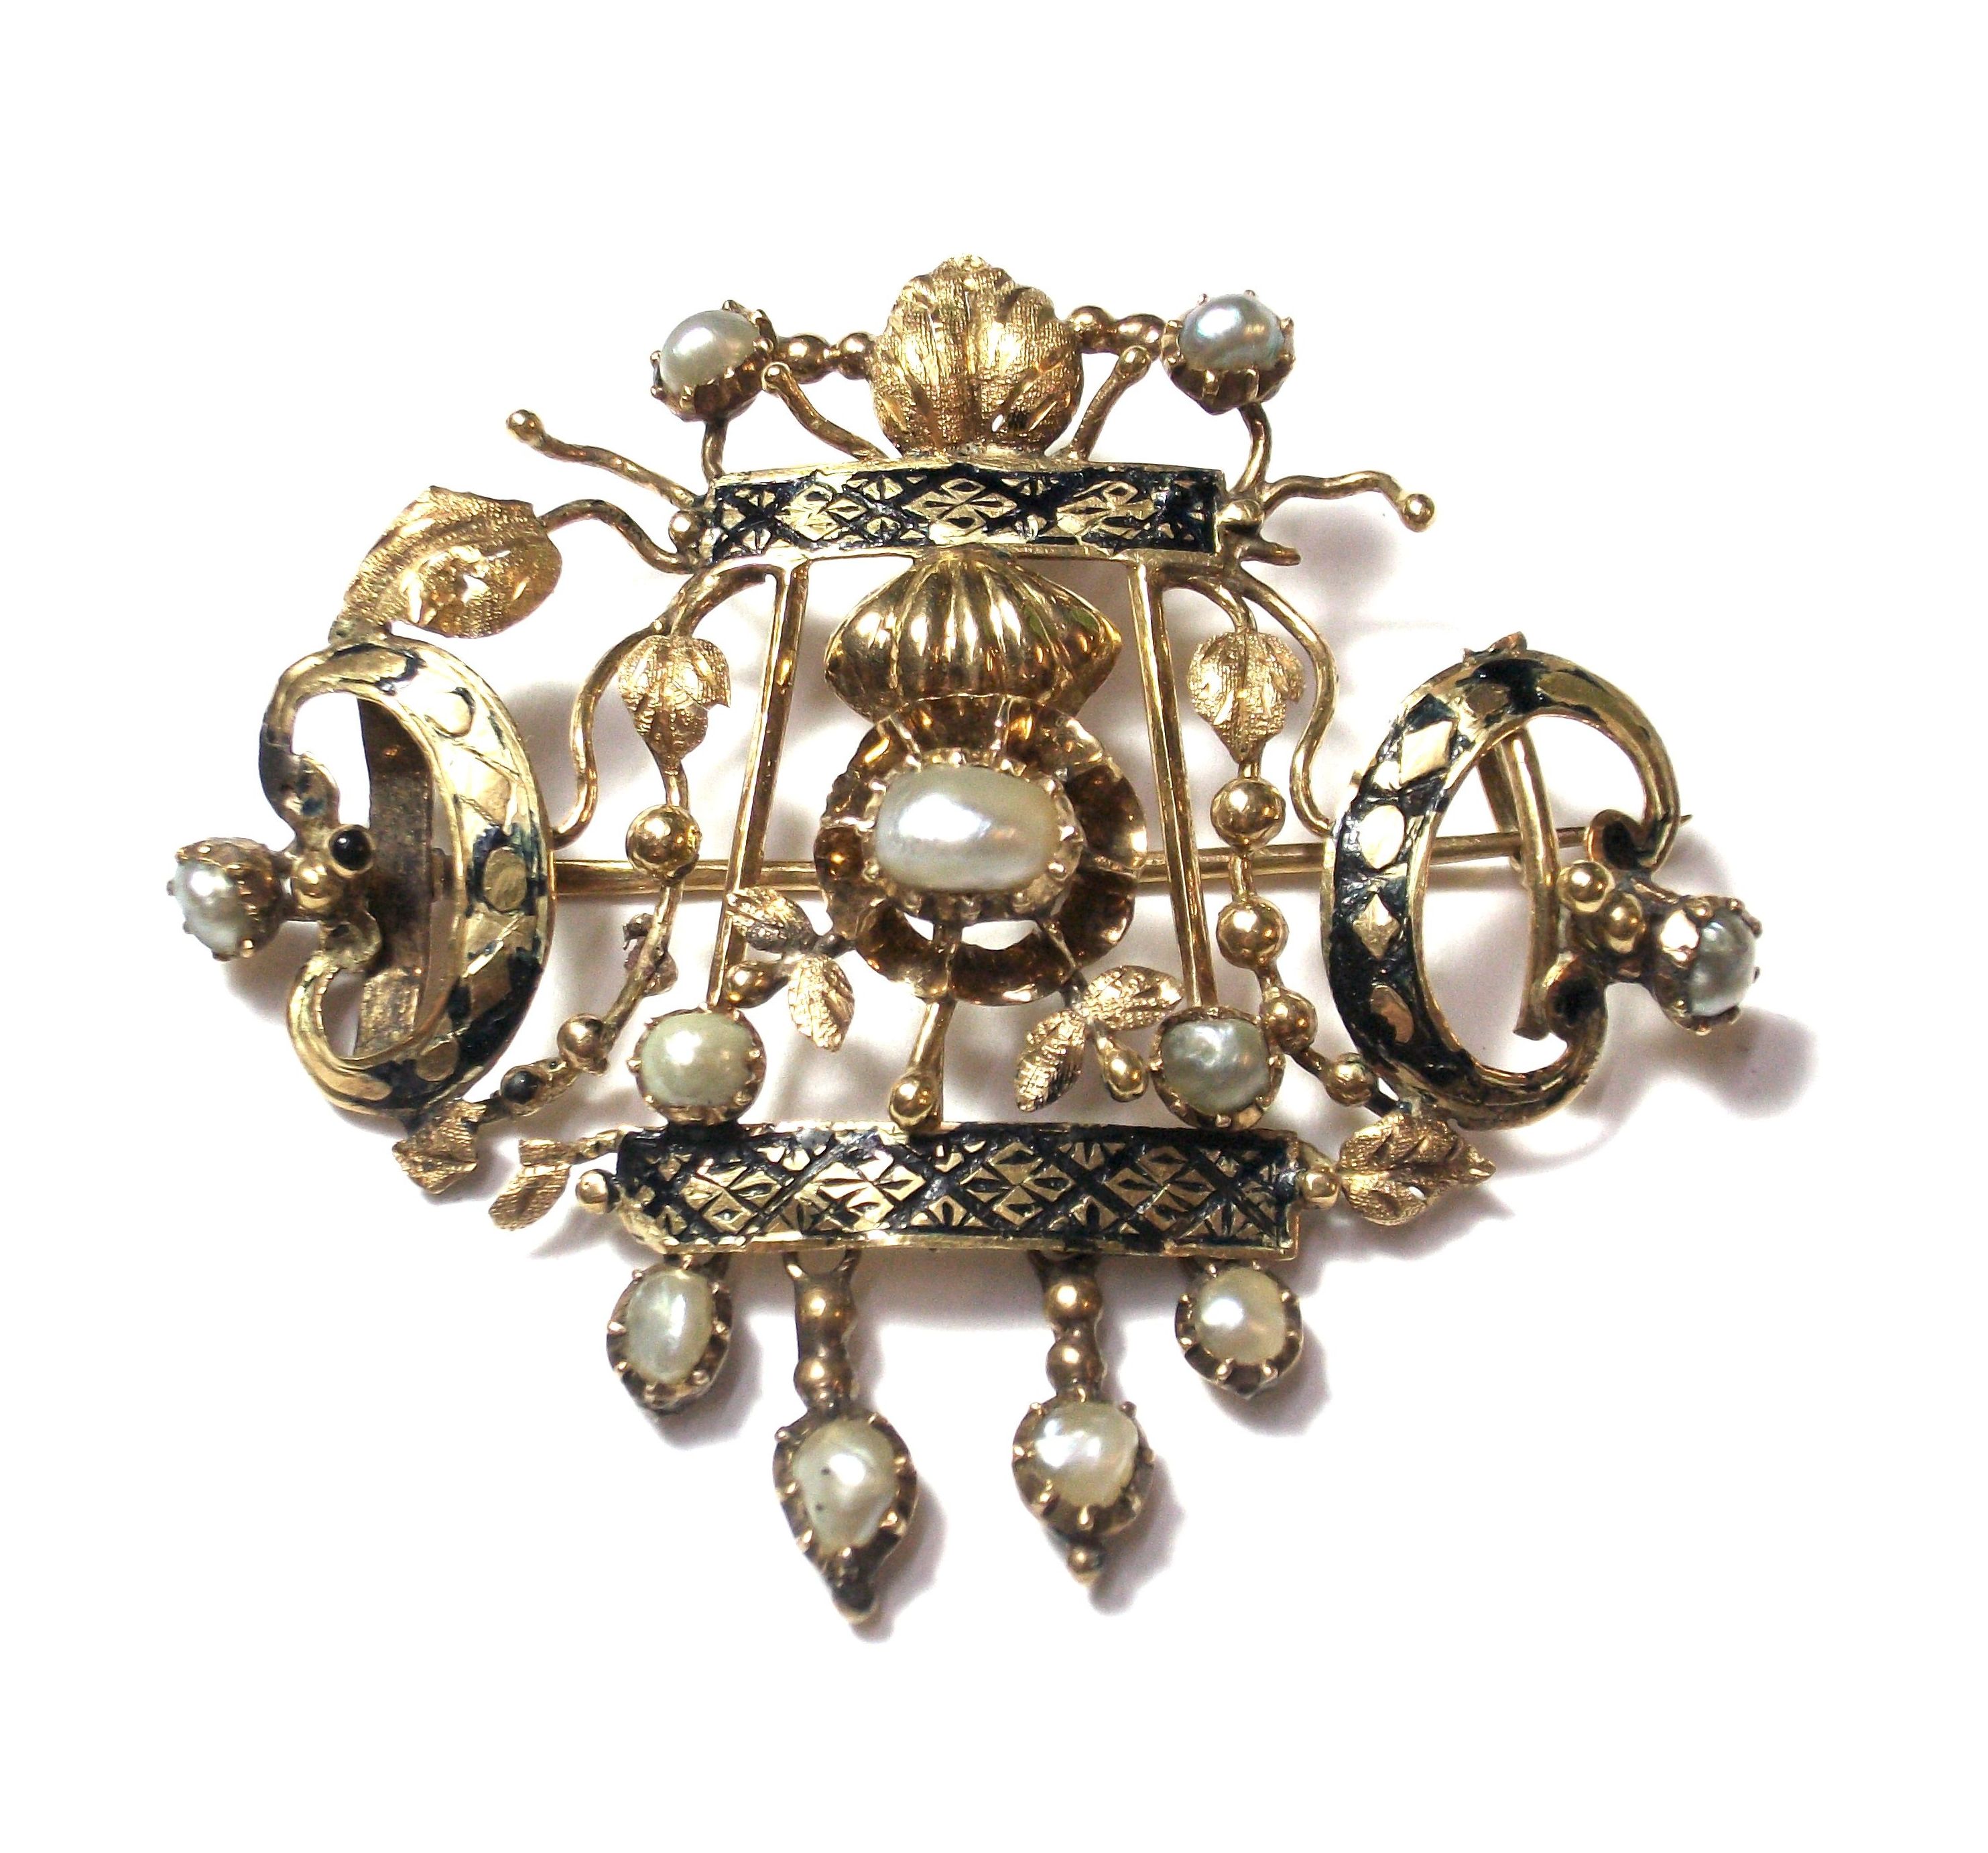 Broche con decoración vegetal realizado en oro de 18k, esmalte y perlas naturales. Primera mitad S. XIX.